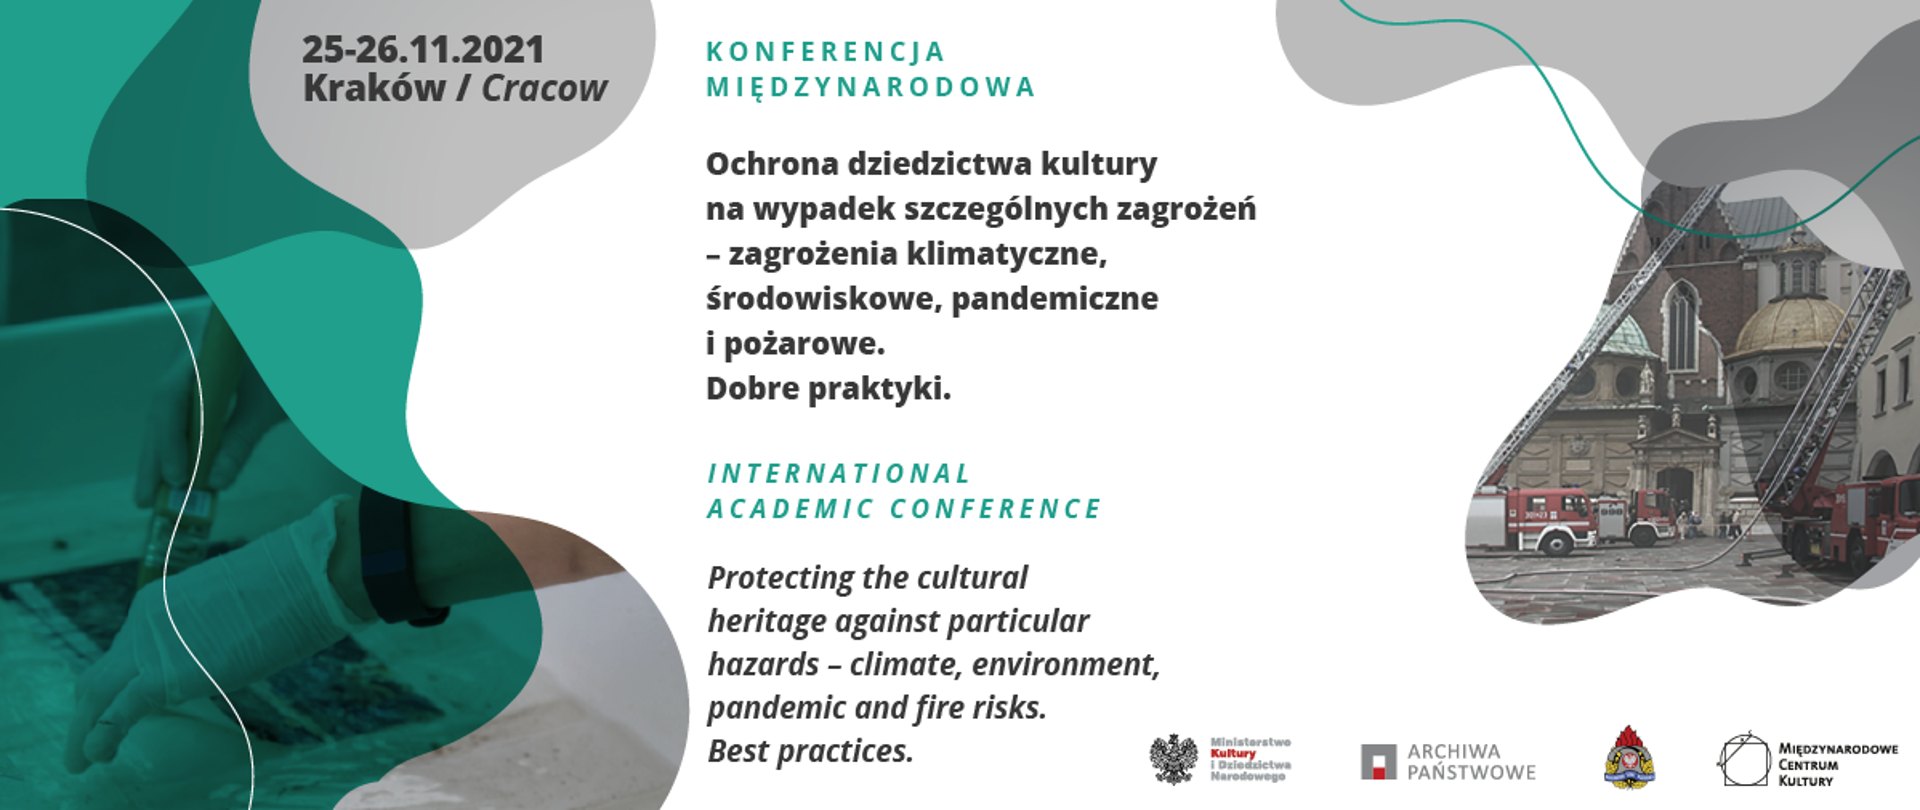 Ochrona dziedzictwa kultury na wypadek szczególnych zagrożeń - międzynarodowa konferencja naukowa z udziałem polskich i światowych ekspertów